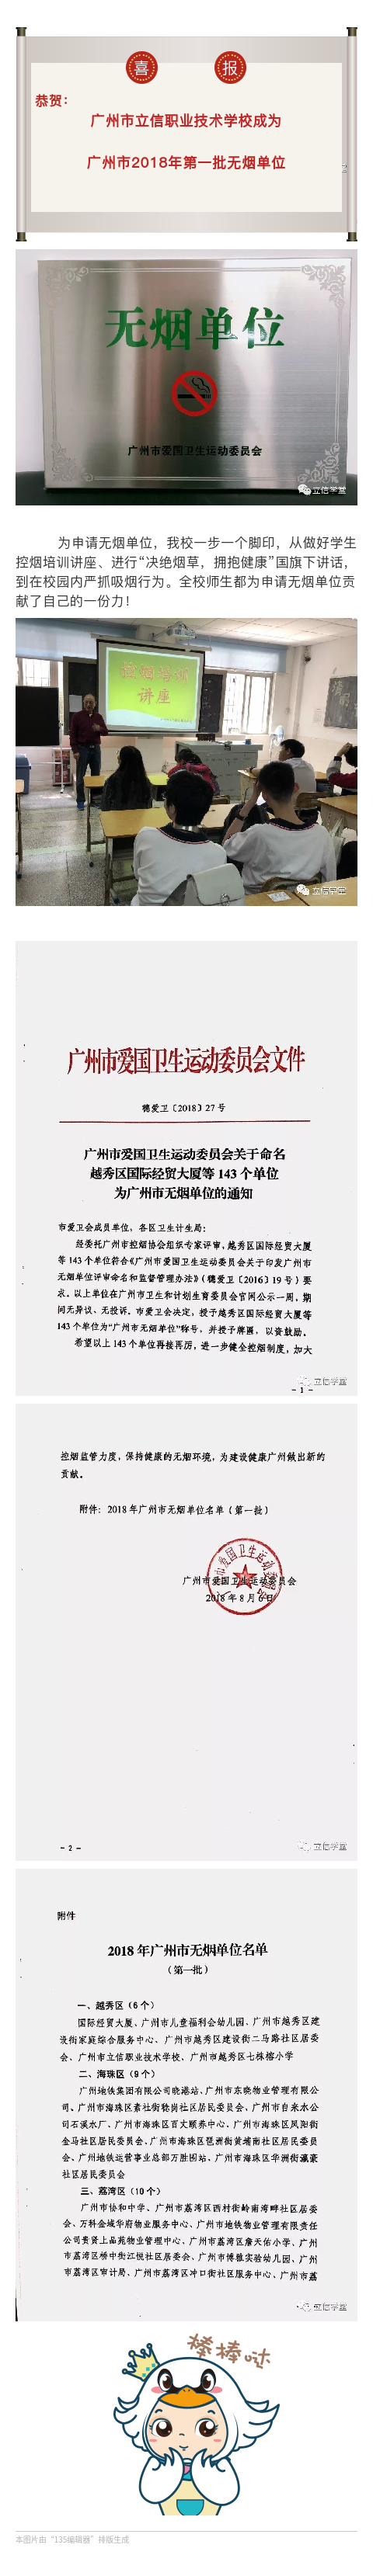 喜报—我校成为2018年广州市第一批无烟单位